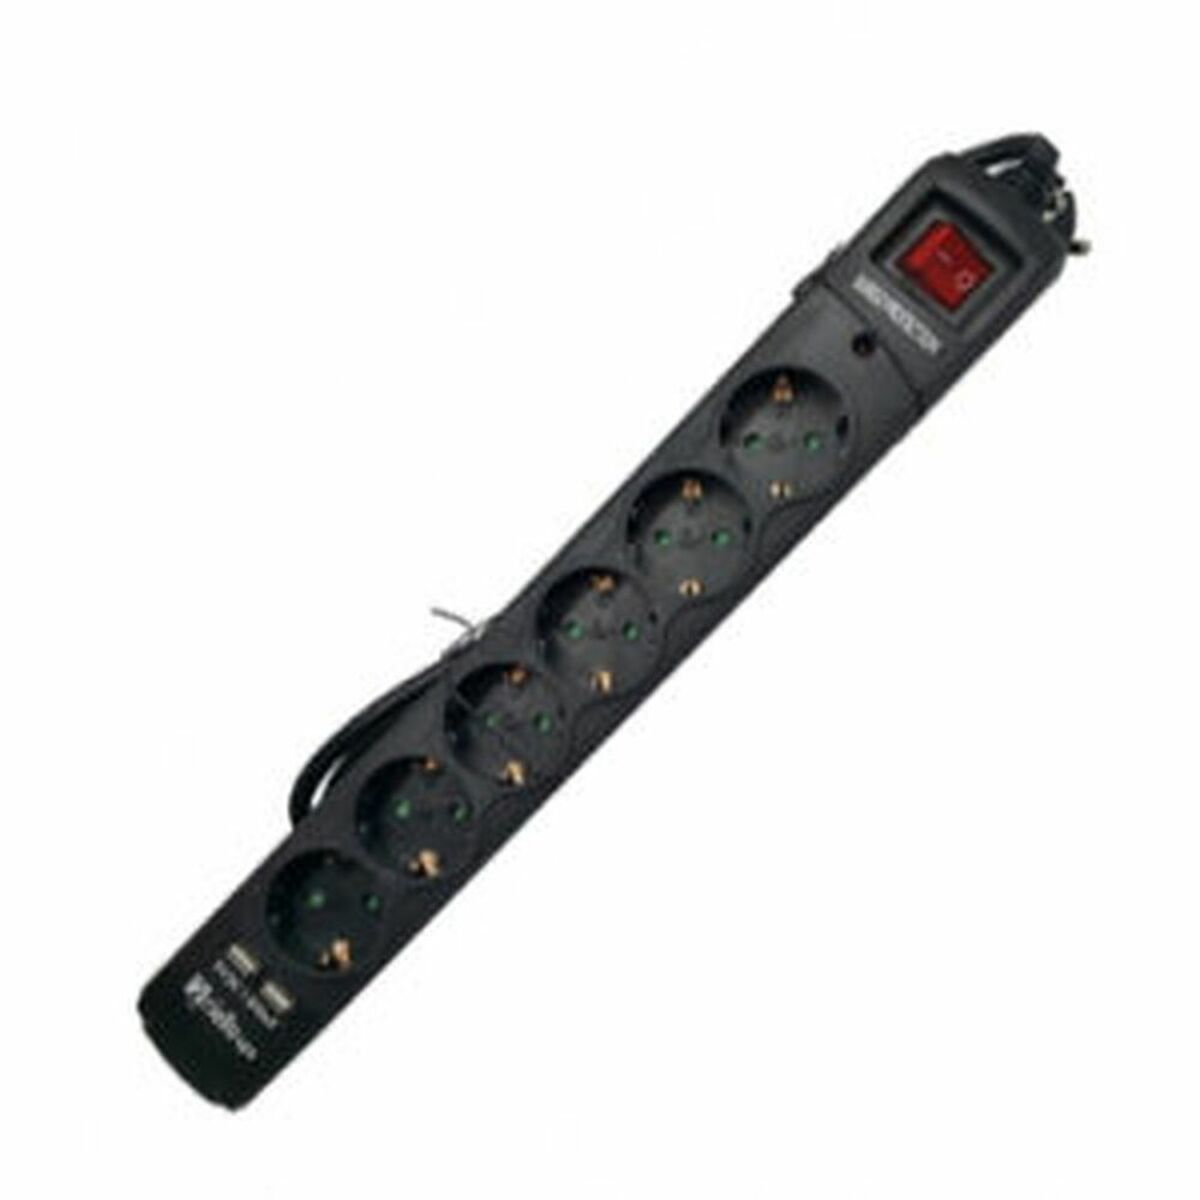 Osta tuote Jatkorasia – 6 pistoketta kytkimellä Riello THUNDER 6002 USB Musta verkkokaupastamme Korhone: Tietokoneet & Elektroniikka 10% alennuksella koodilla KORHONE